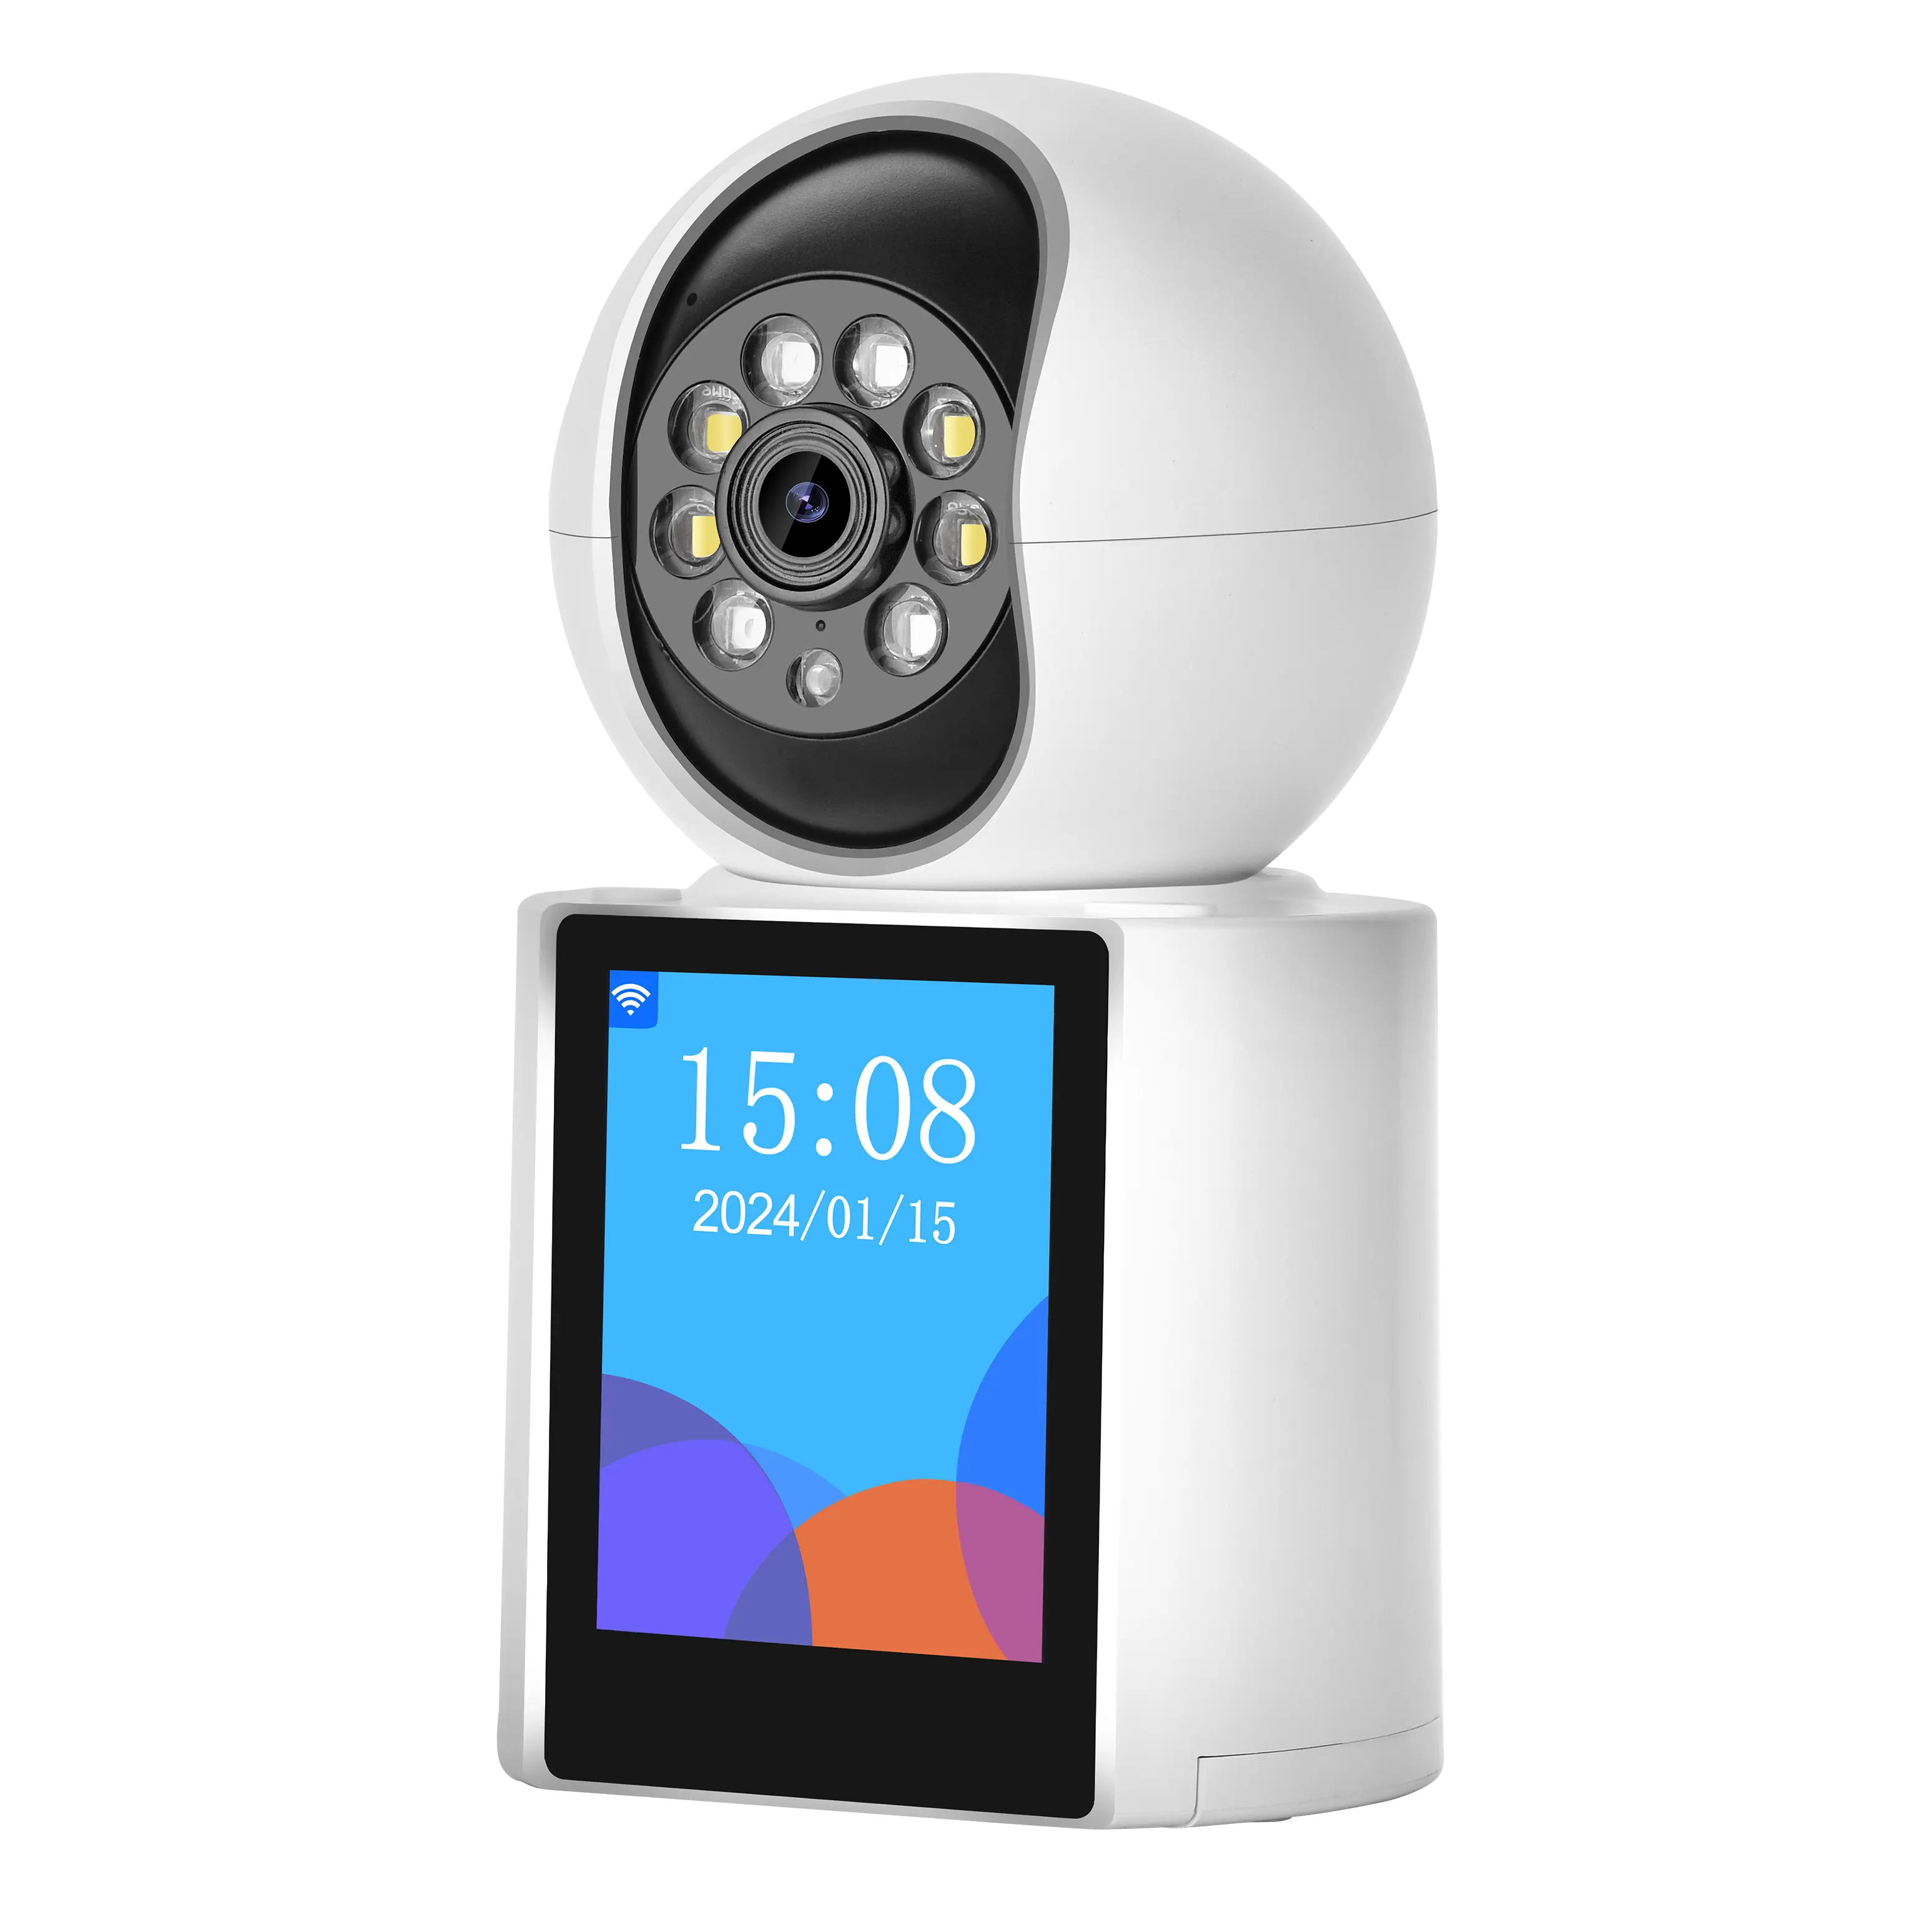 Qearim fabbrica Baby Monitor 3MP ultra HD pixel videochiamata smart iCSee CCTV wifi con telecamera per visione notturna a colori